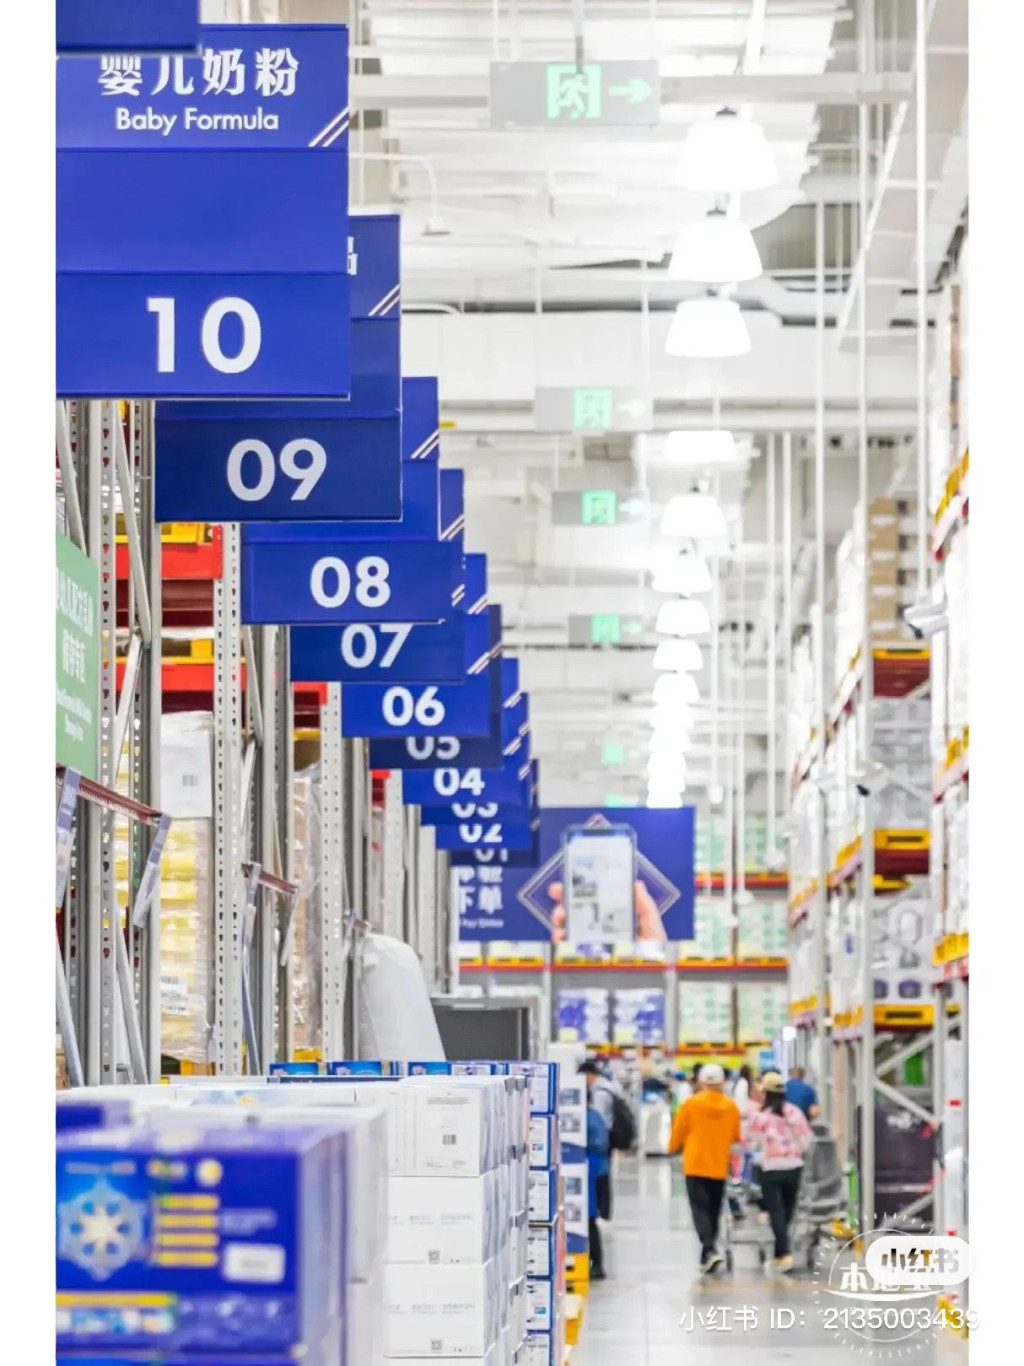 深圳4大仓储式超市推介｜1.山姆会员商店 山姆会员商店为美国零售商沃尔玛公司（Walmart）旗下的大型仓储式超市